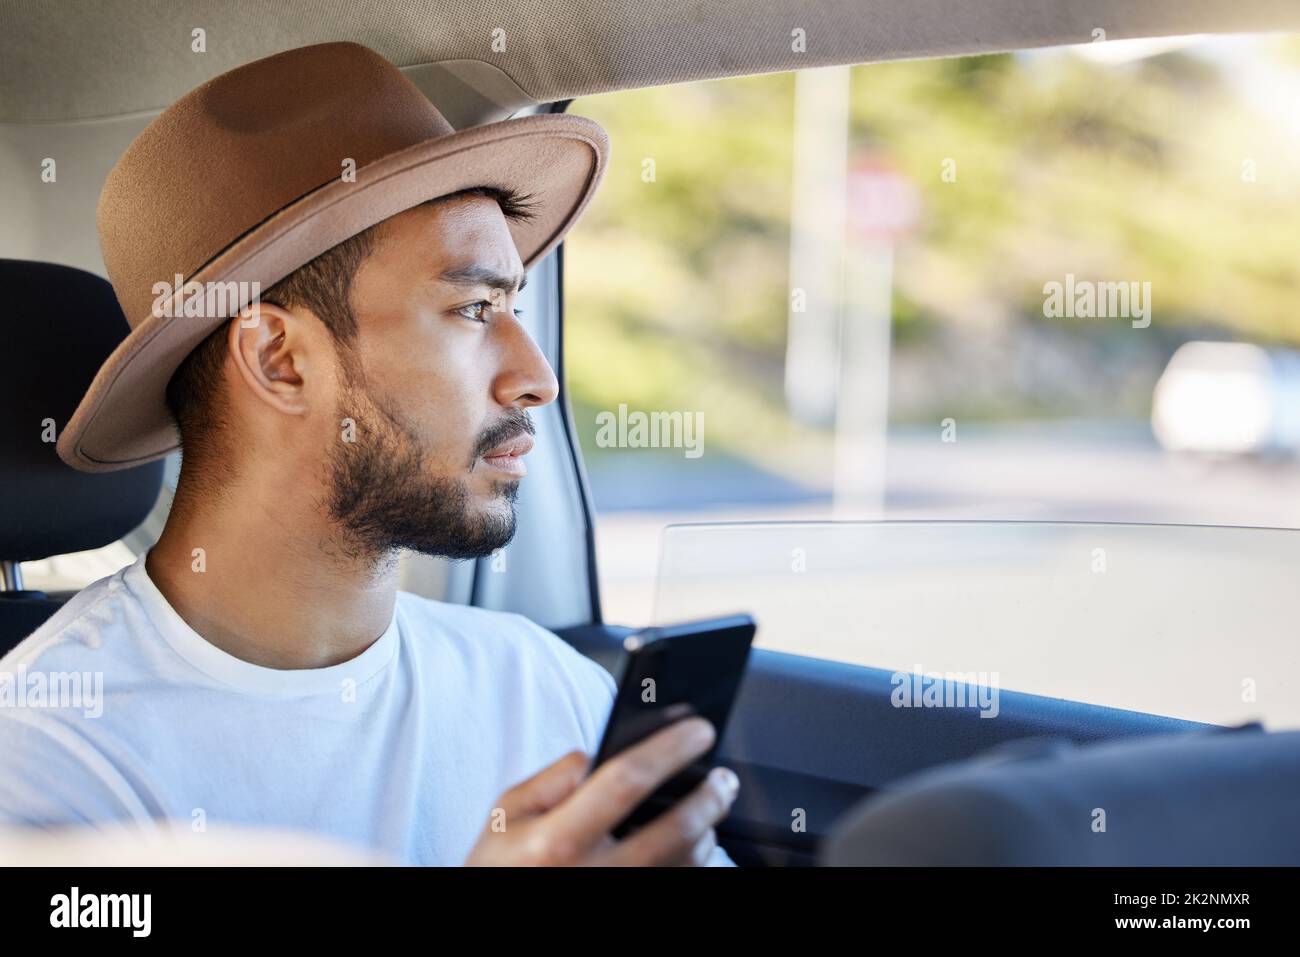 Es ist nicht das Ziel, es ist die Reise. Aufnahme eines jungen Mannes, der in einem Auto sitzt, während er sein Telefon benutzt. Stockfoto